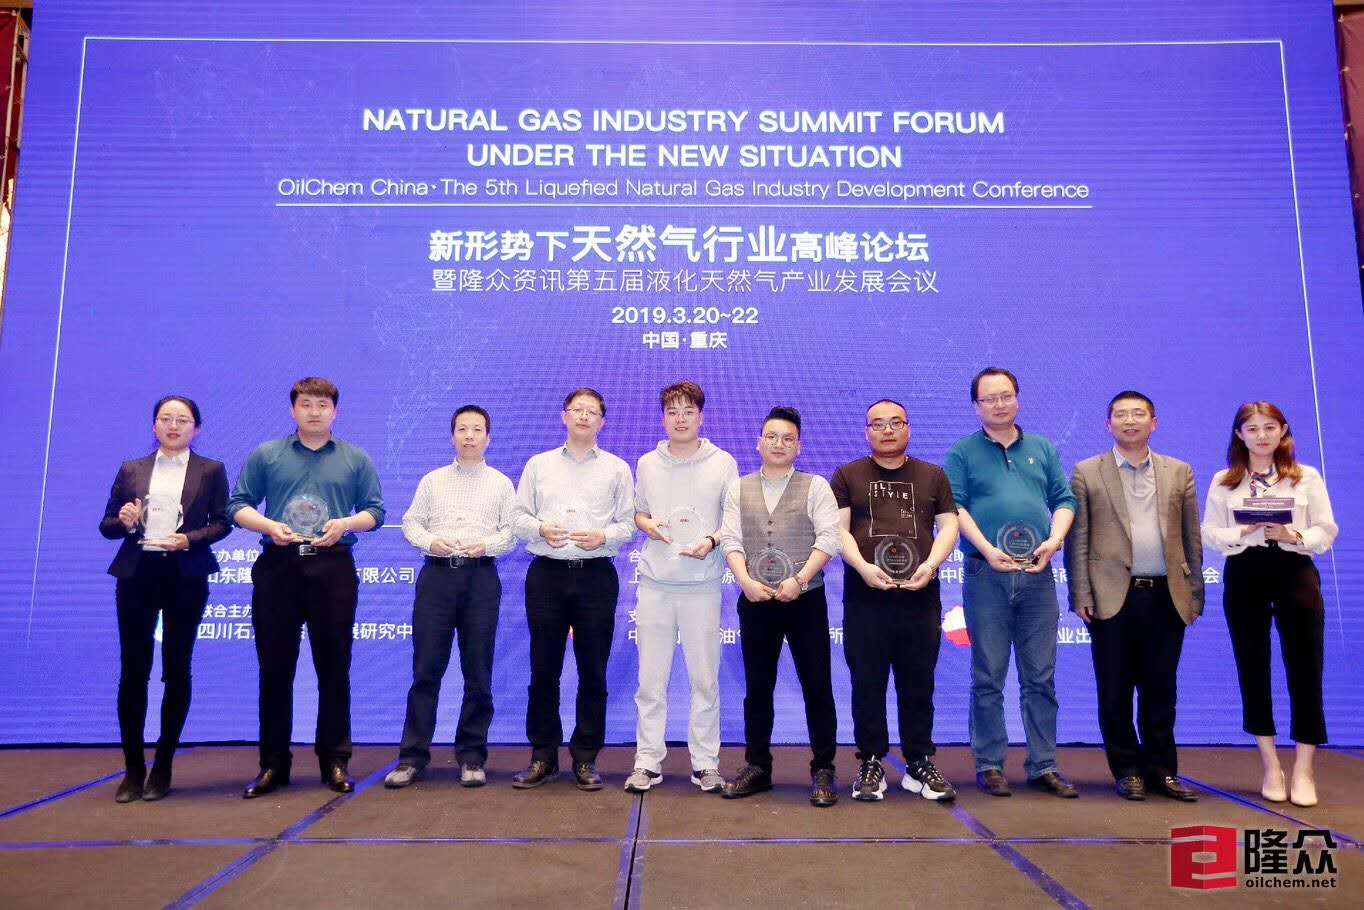 宁夏哈纳斯能源发展有限公司荣获 “2018年中国十大LNG贸易商”